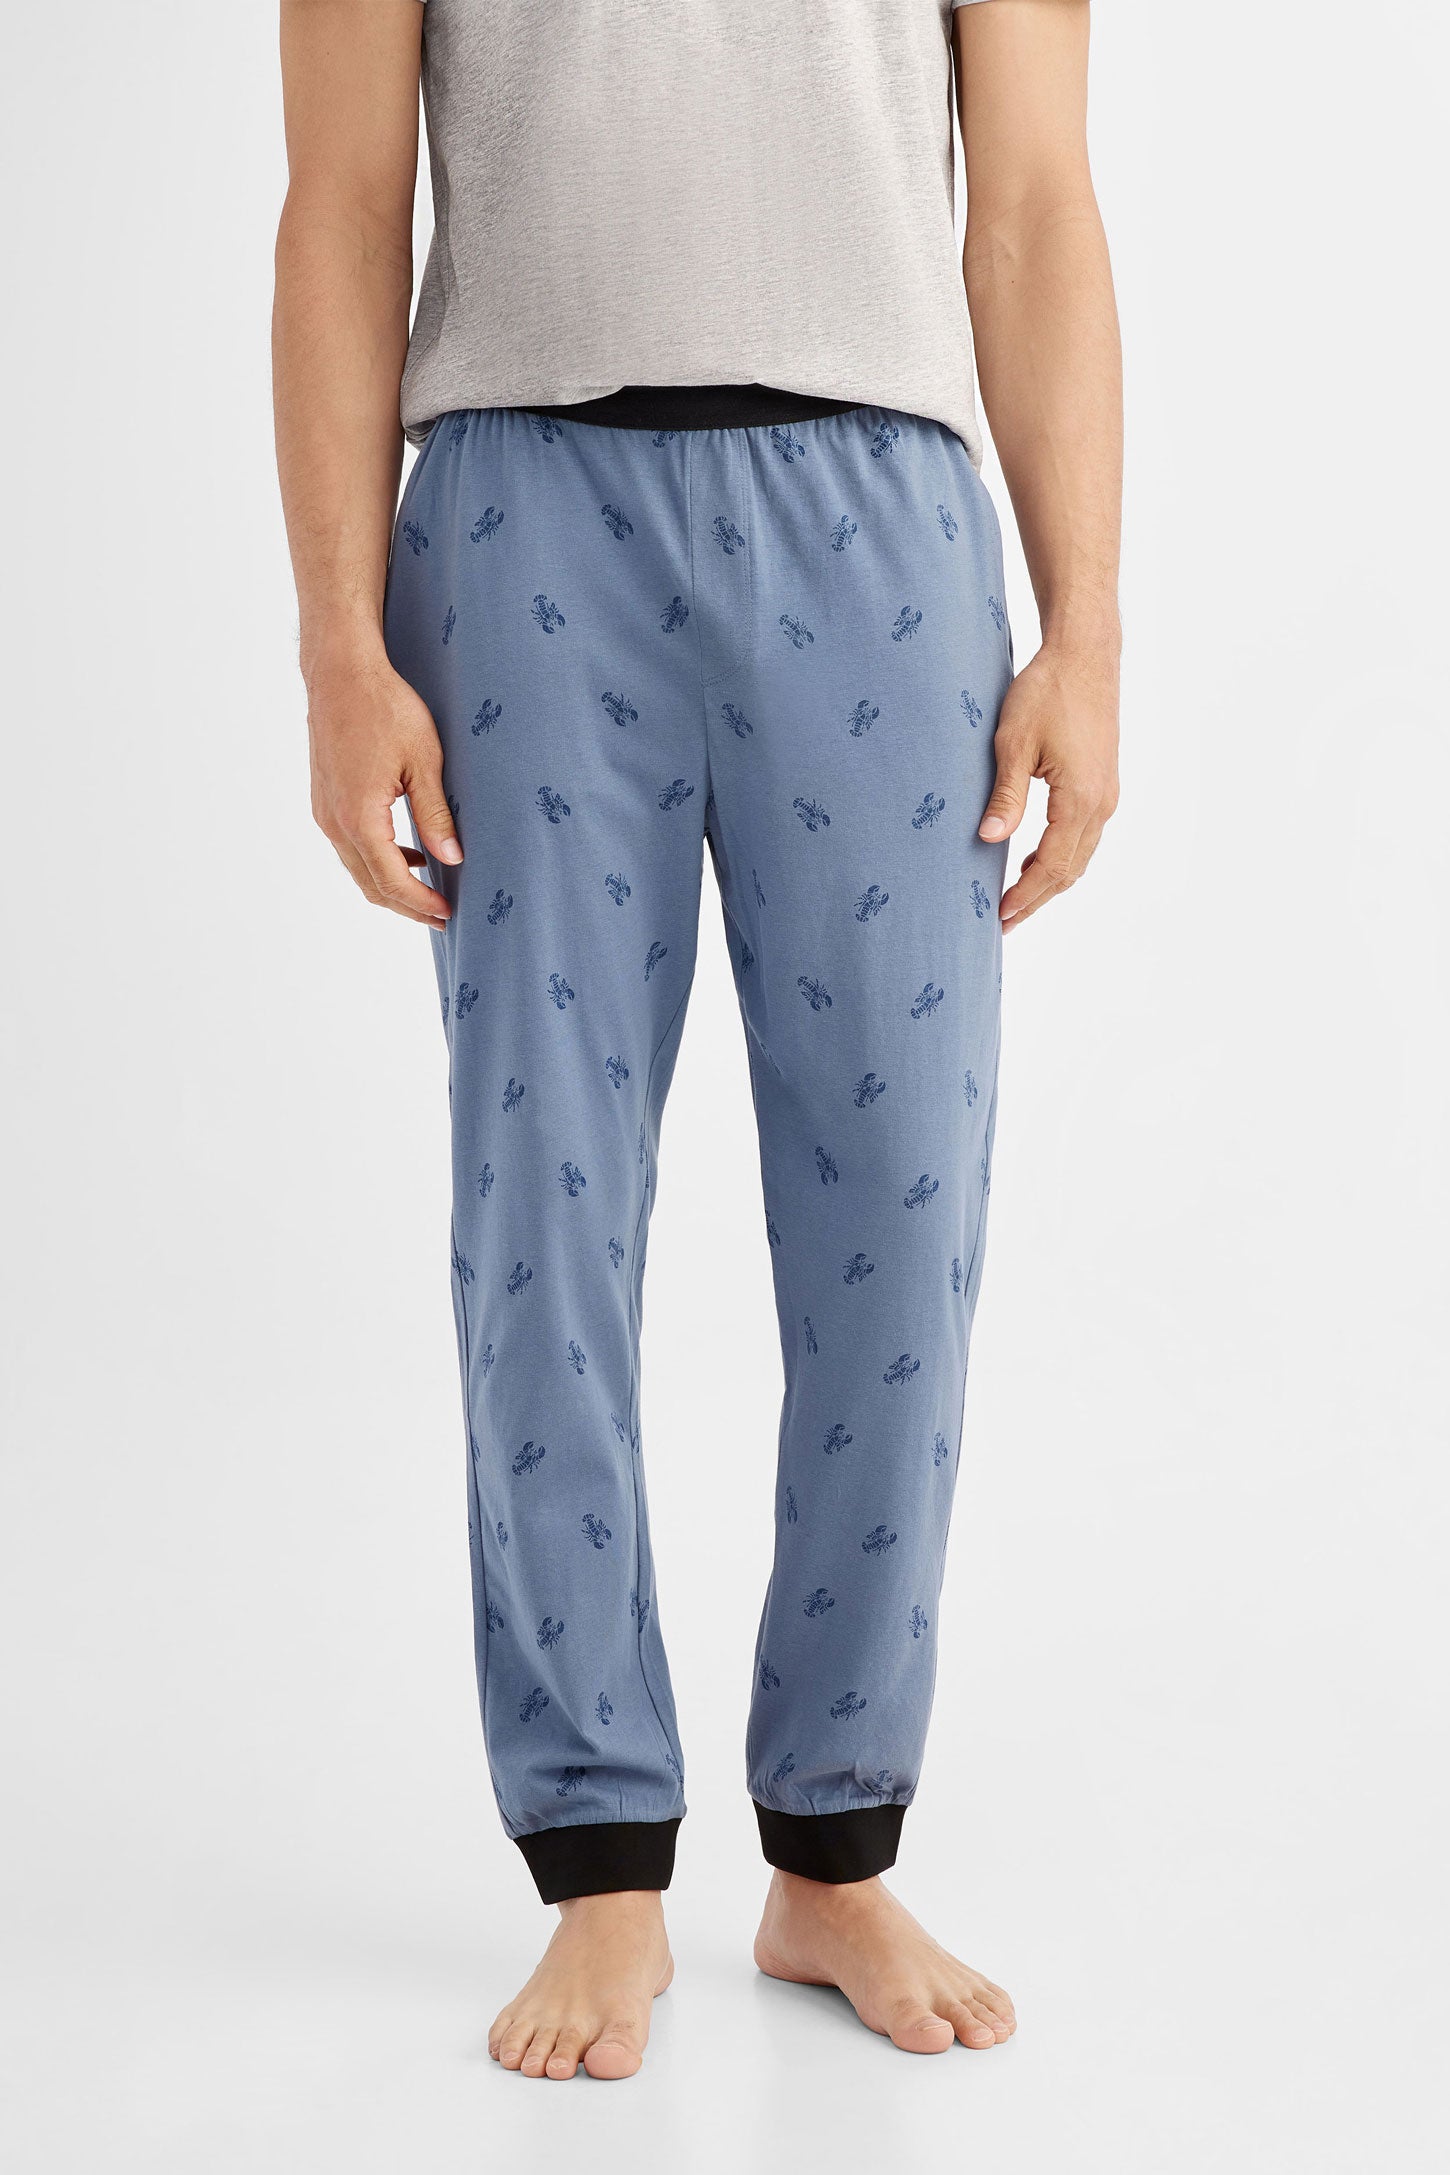 Pantalon pyjama en coton, 2/50$ - Homme && COMBO BLEU